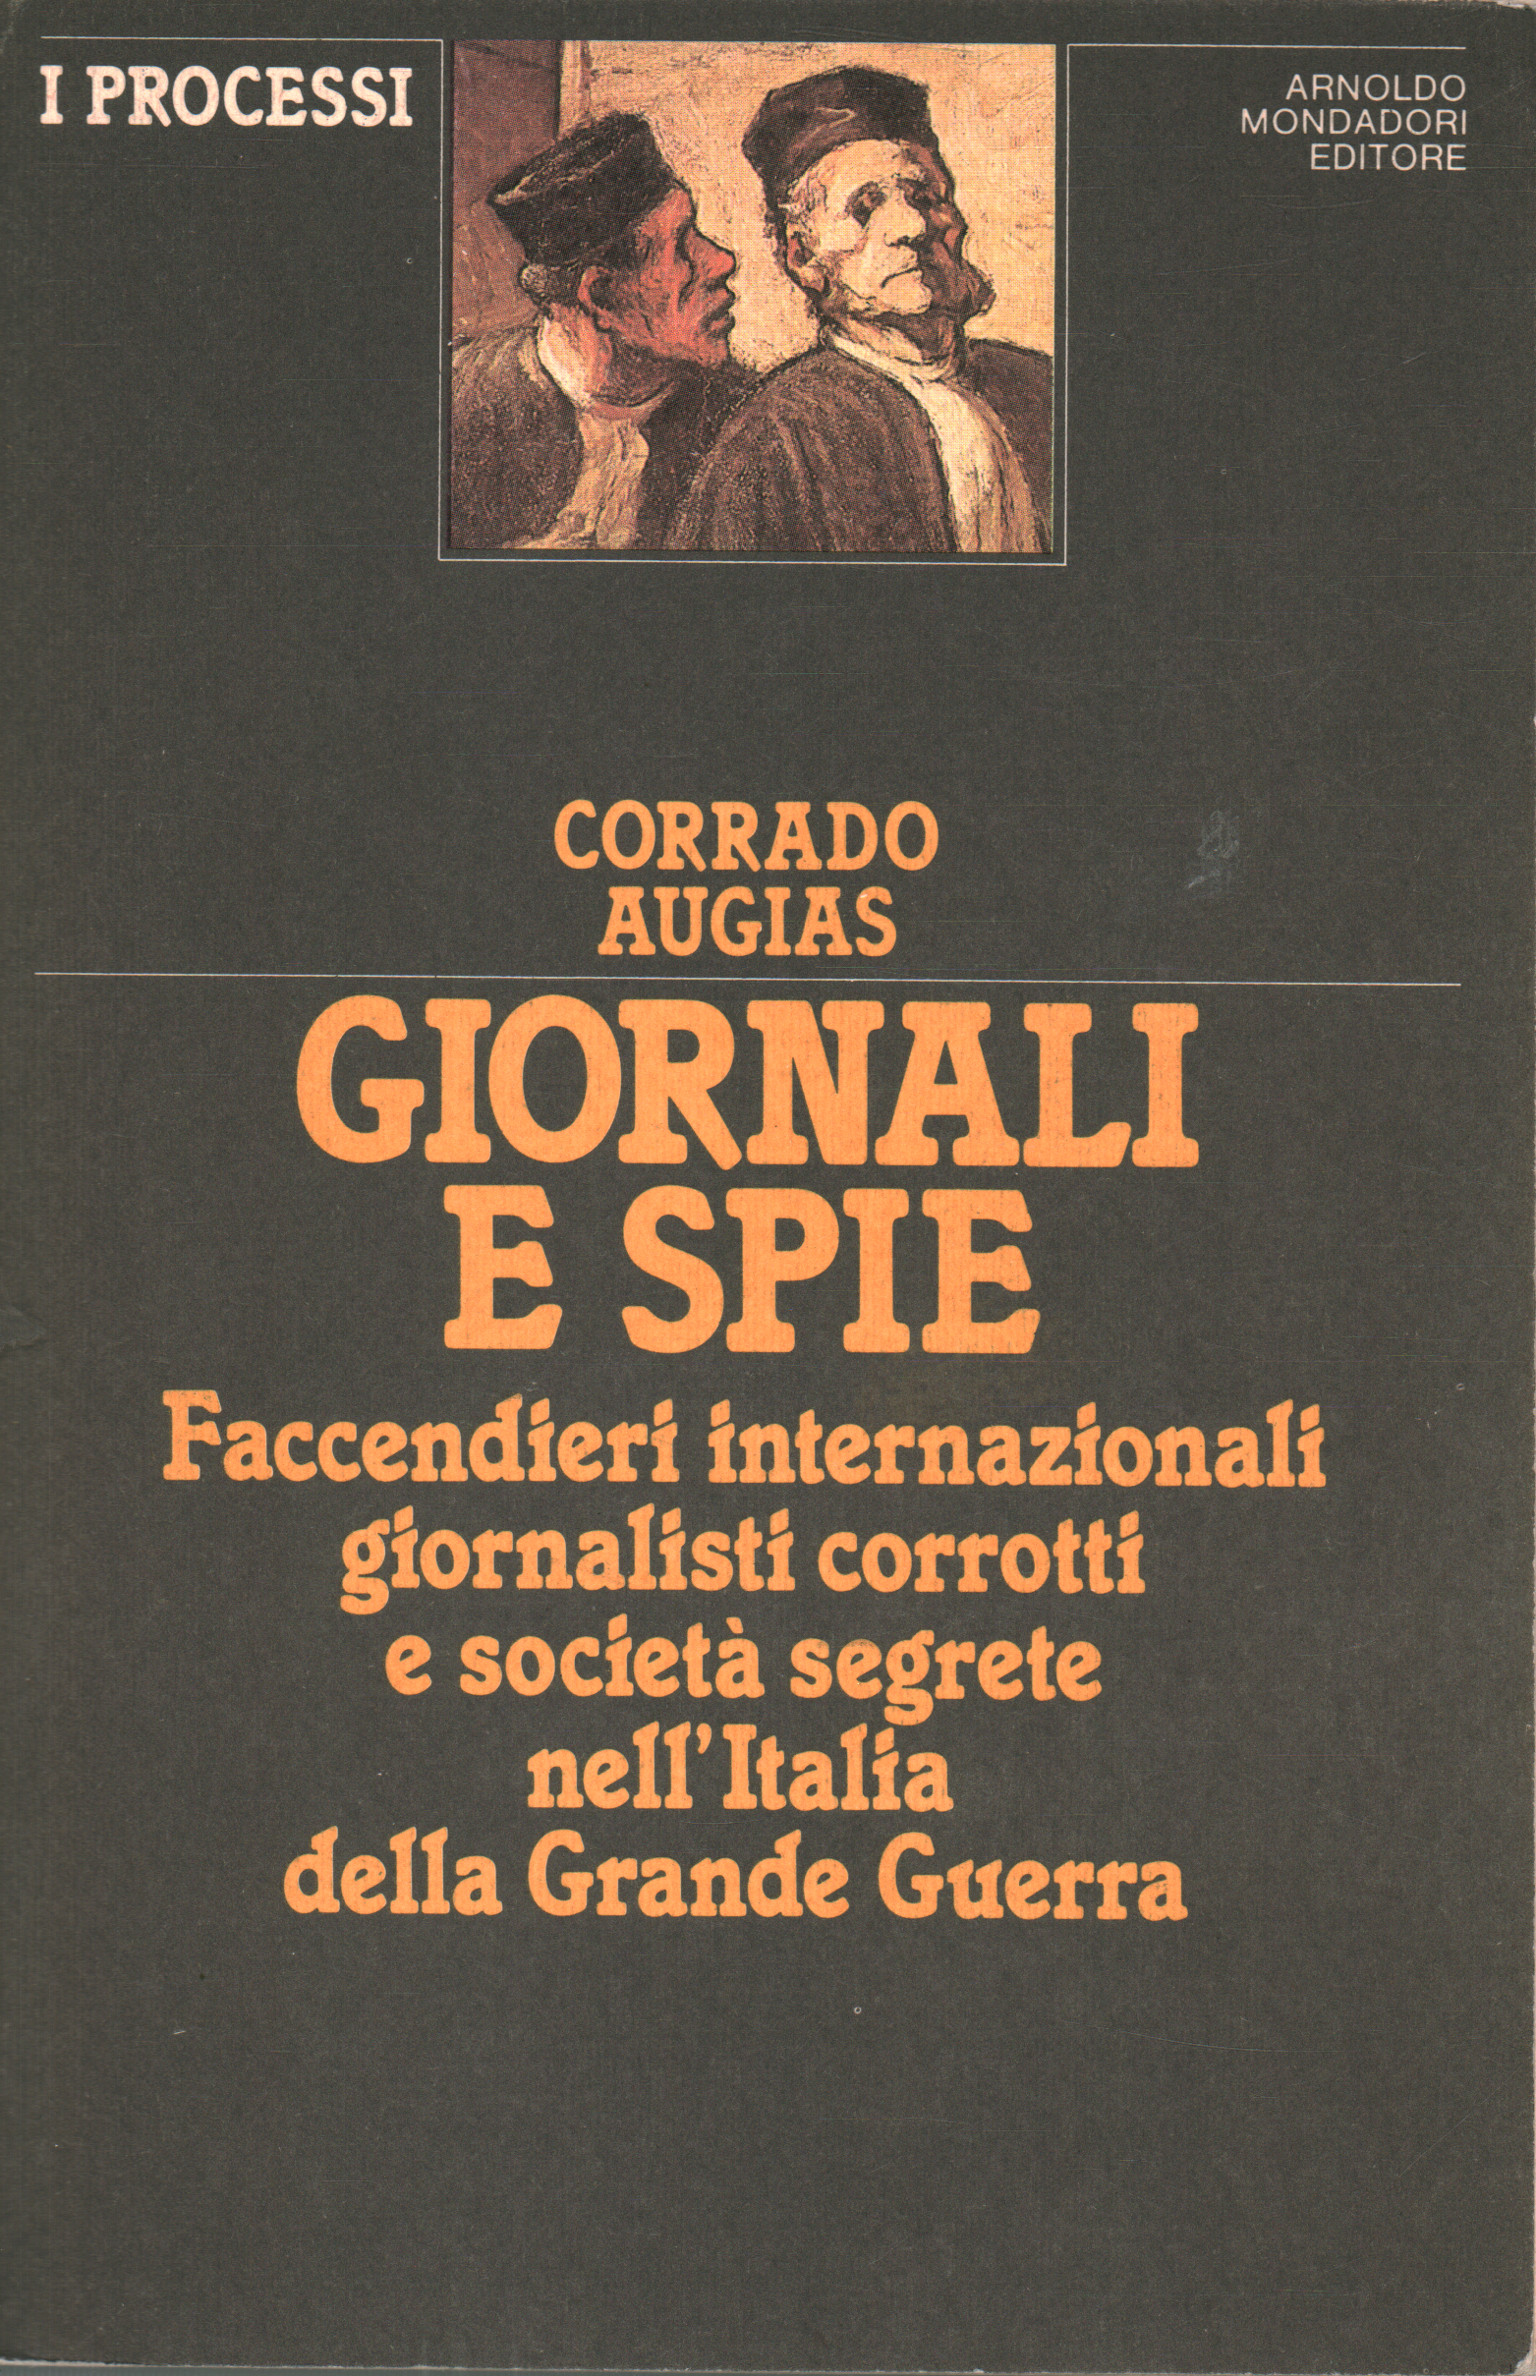 Les journaux, et les espions, Corrado Augias